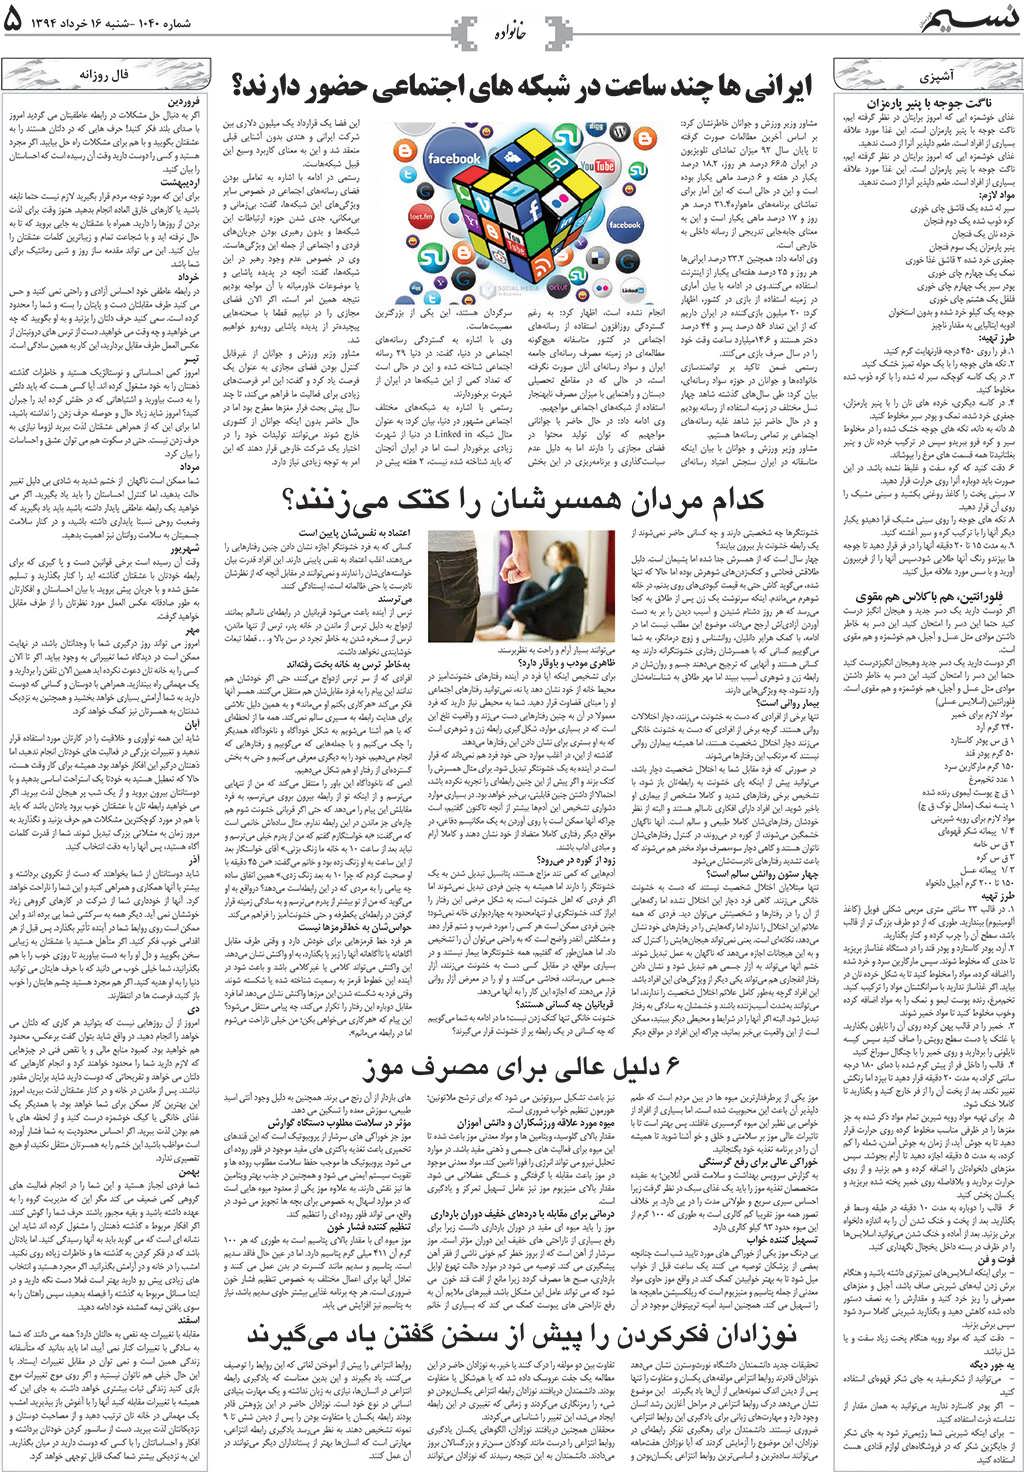 صفحه خانواده روزنامه نسیم شماره 1040